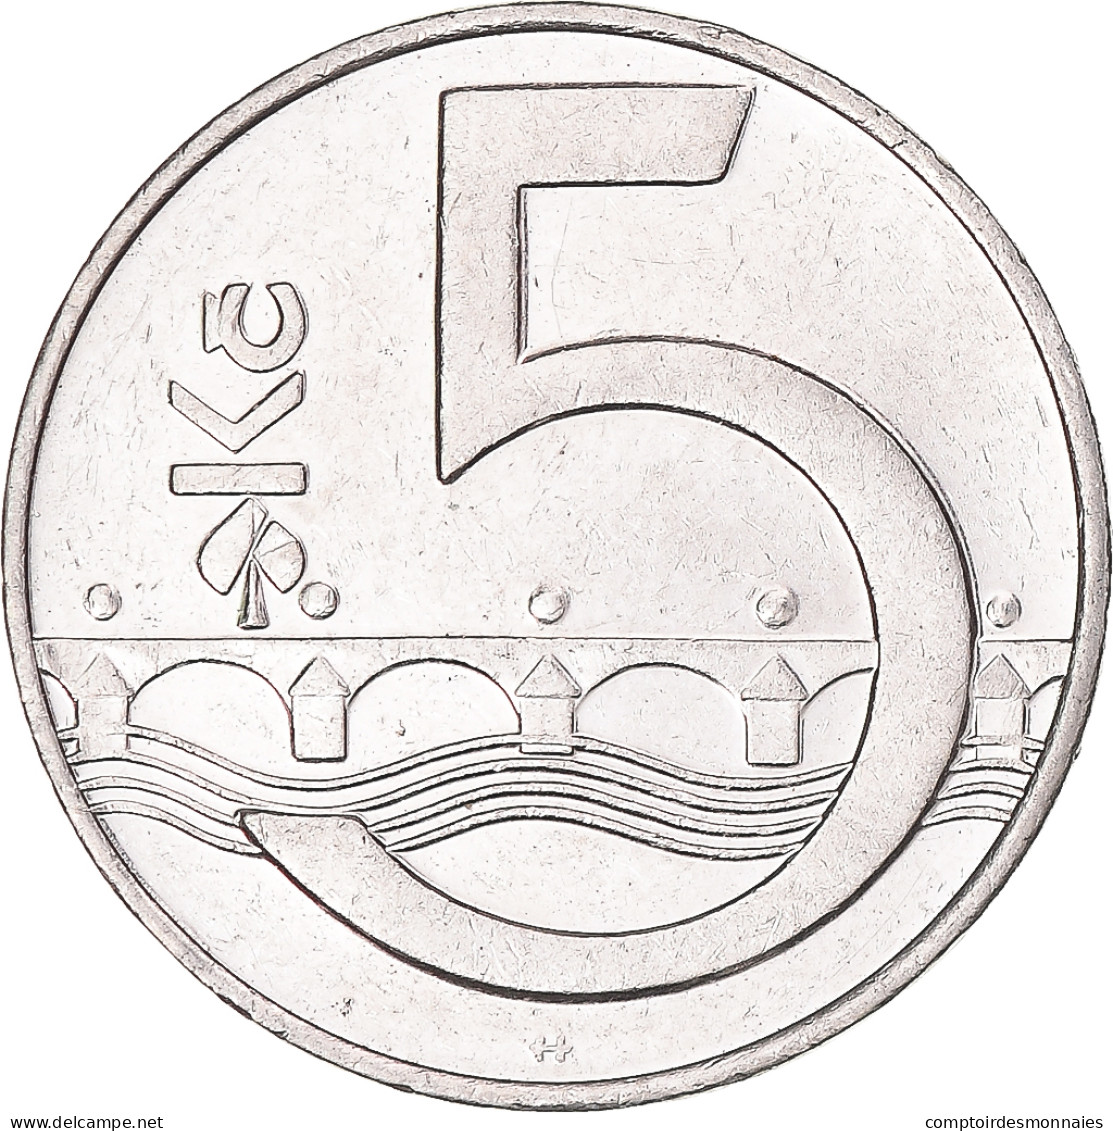 Monnaie, République Tchèque, 5 Korun, 1993 - Tchéquie